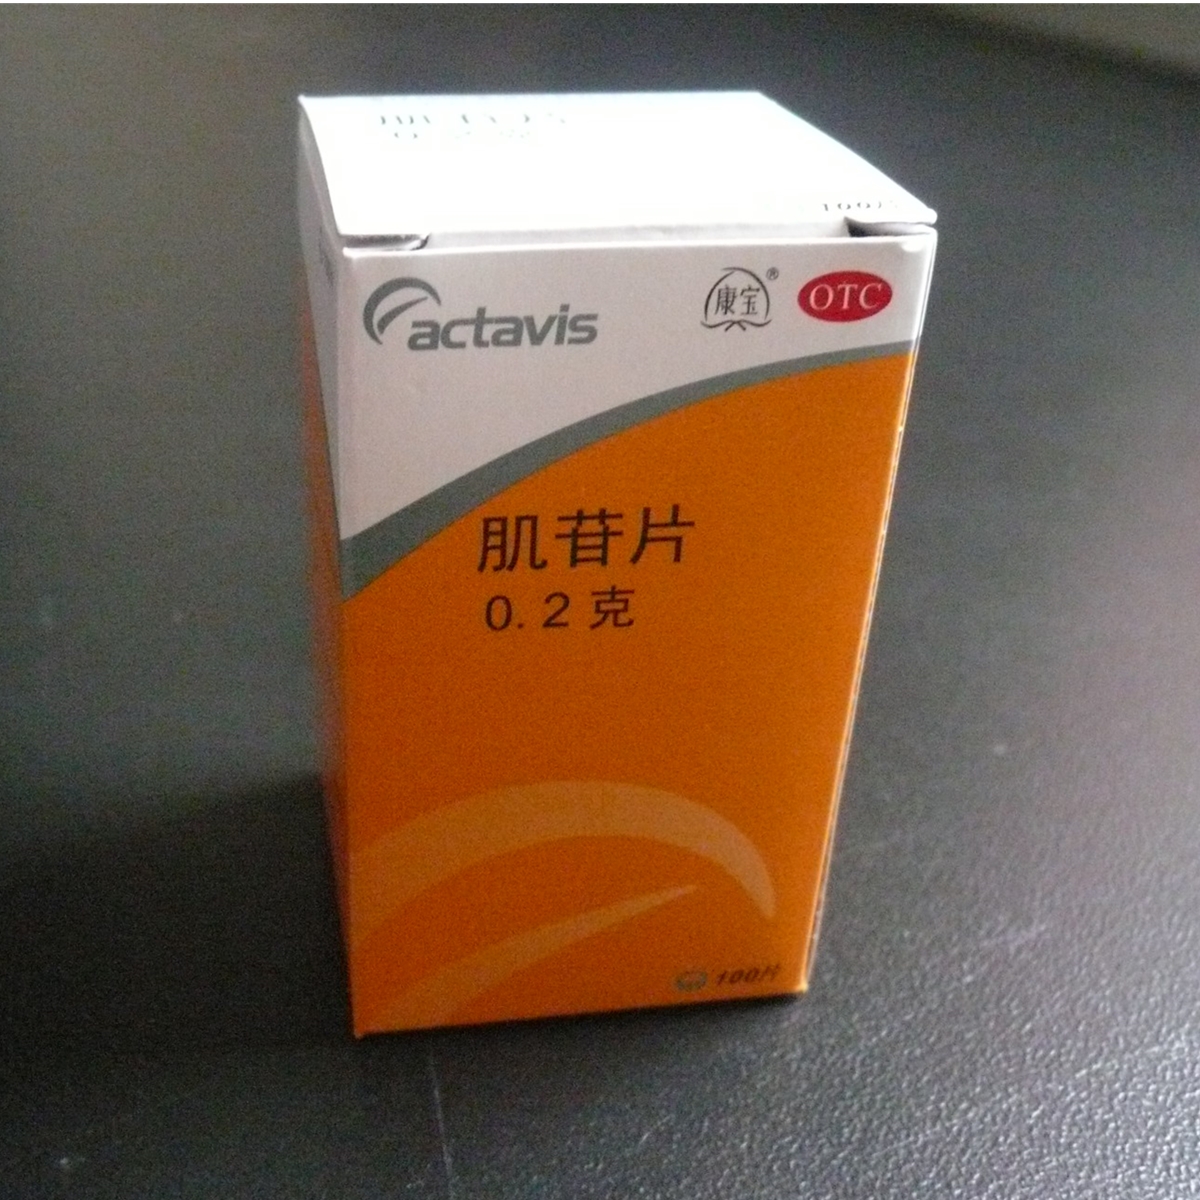 【佛山】肌苷片-阿特维斯(佛山)制药有限公司